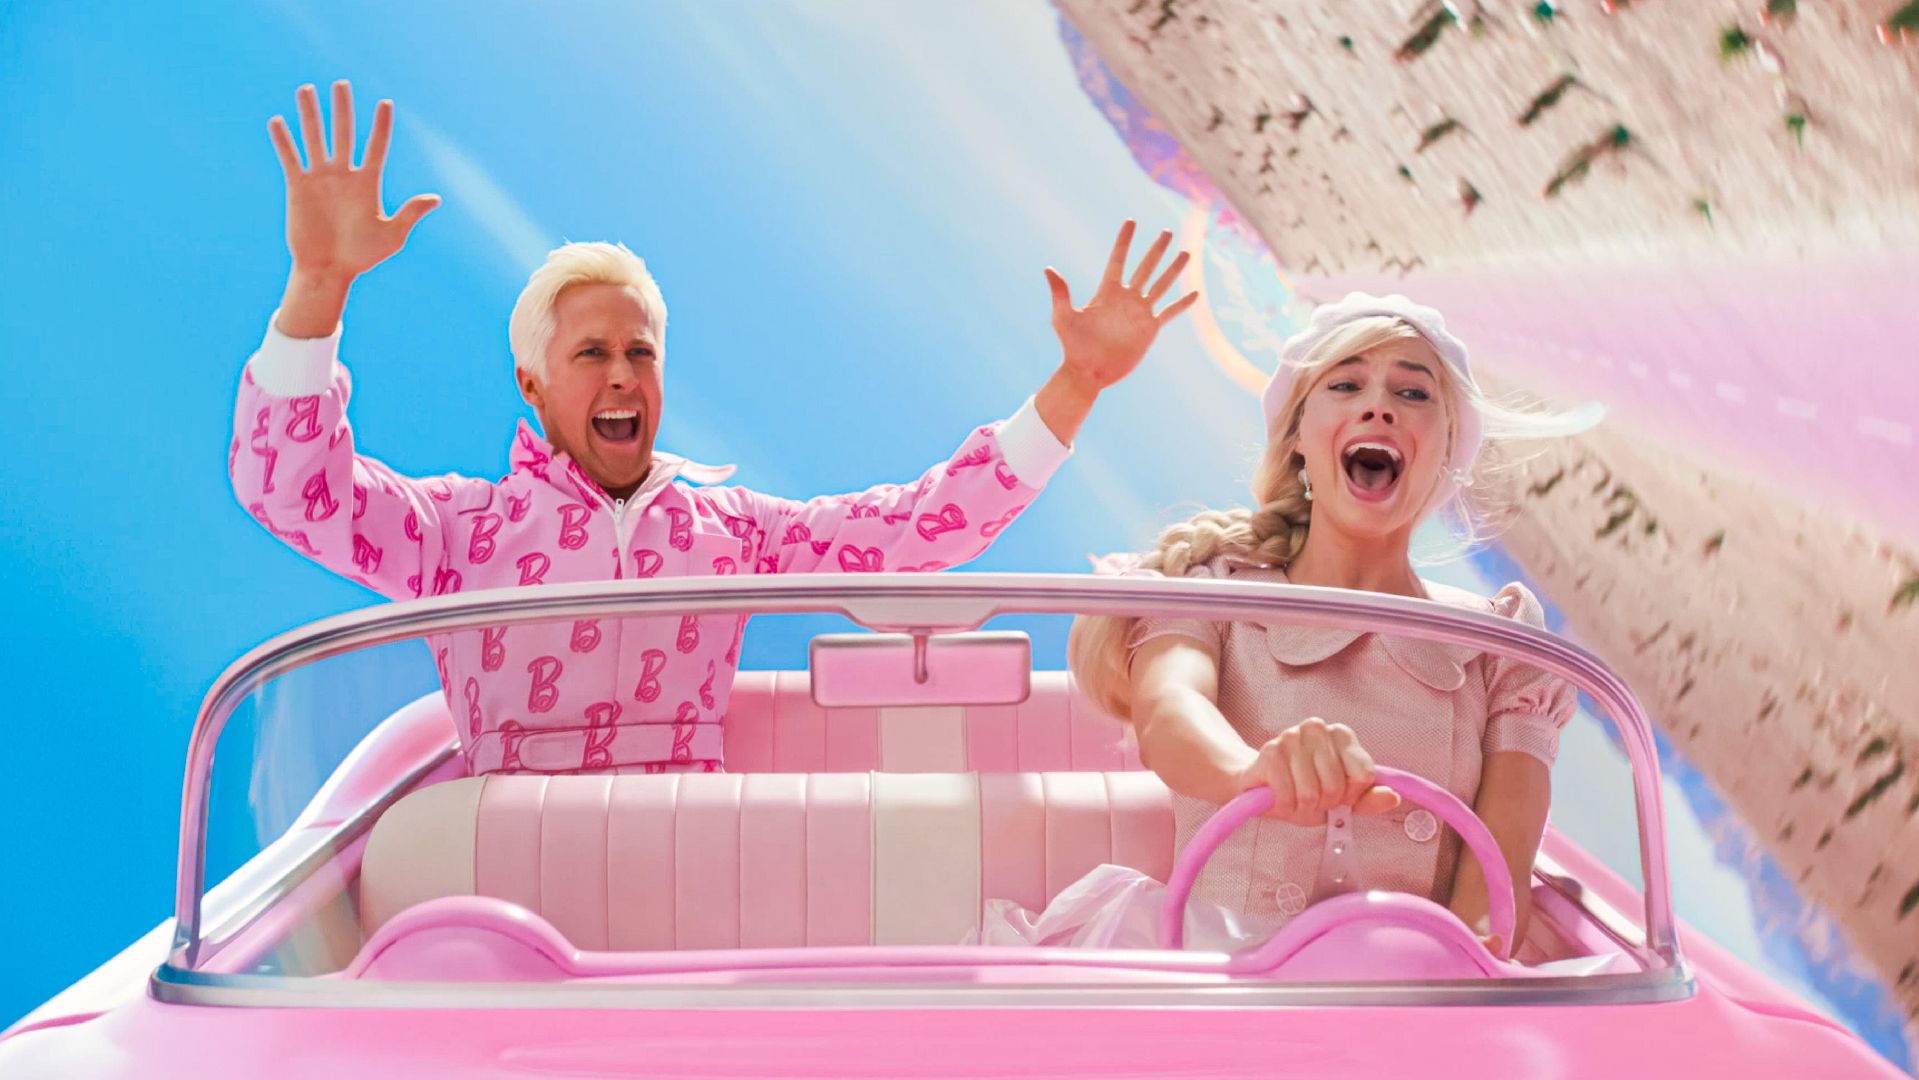 Mira el nuevo tráiler de “Barbie”, la película más esperada de 2023 - Infobae